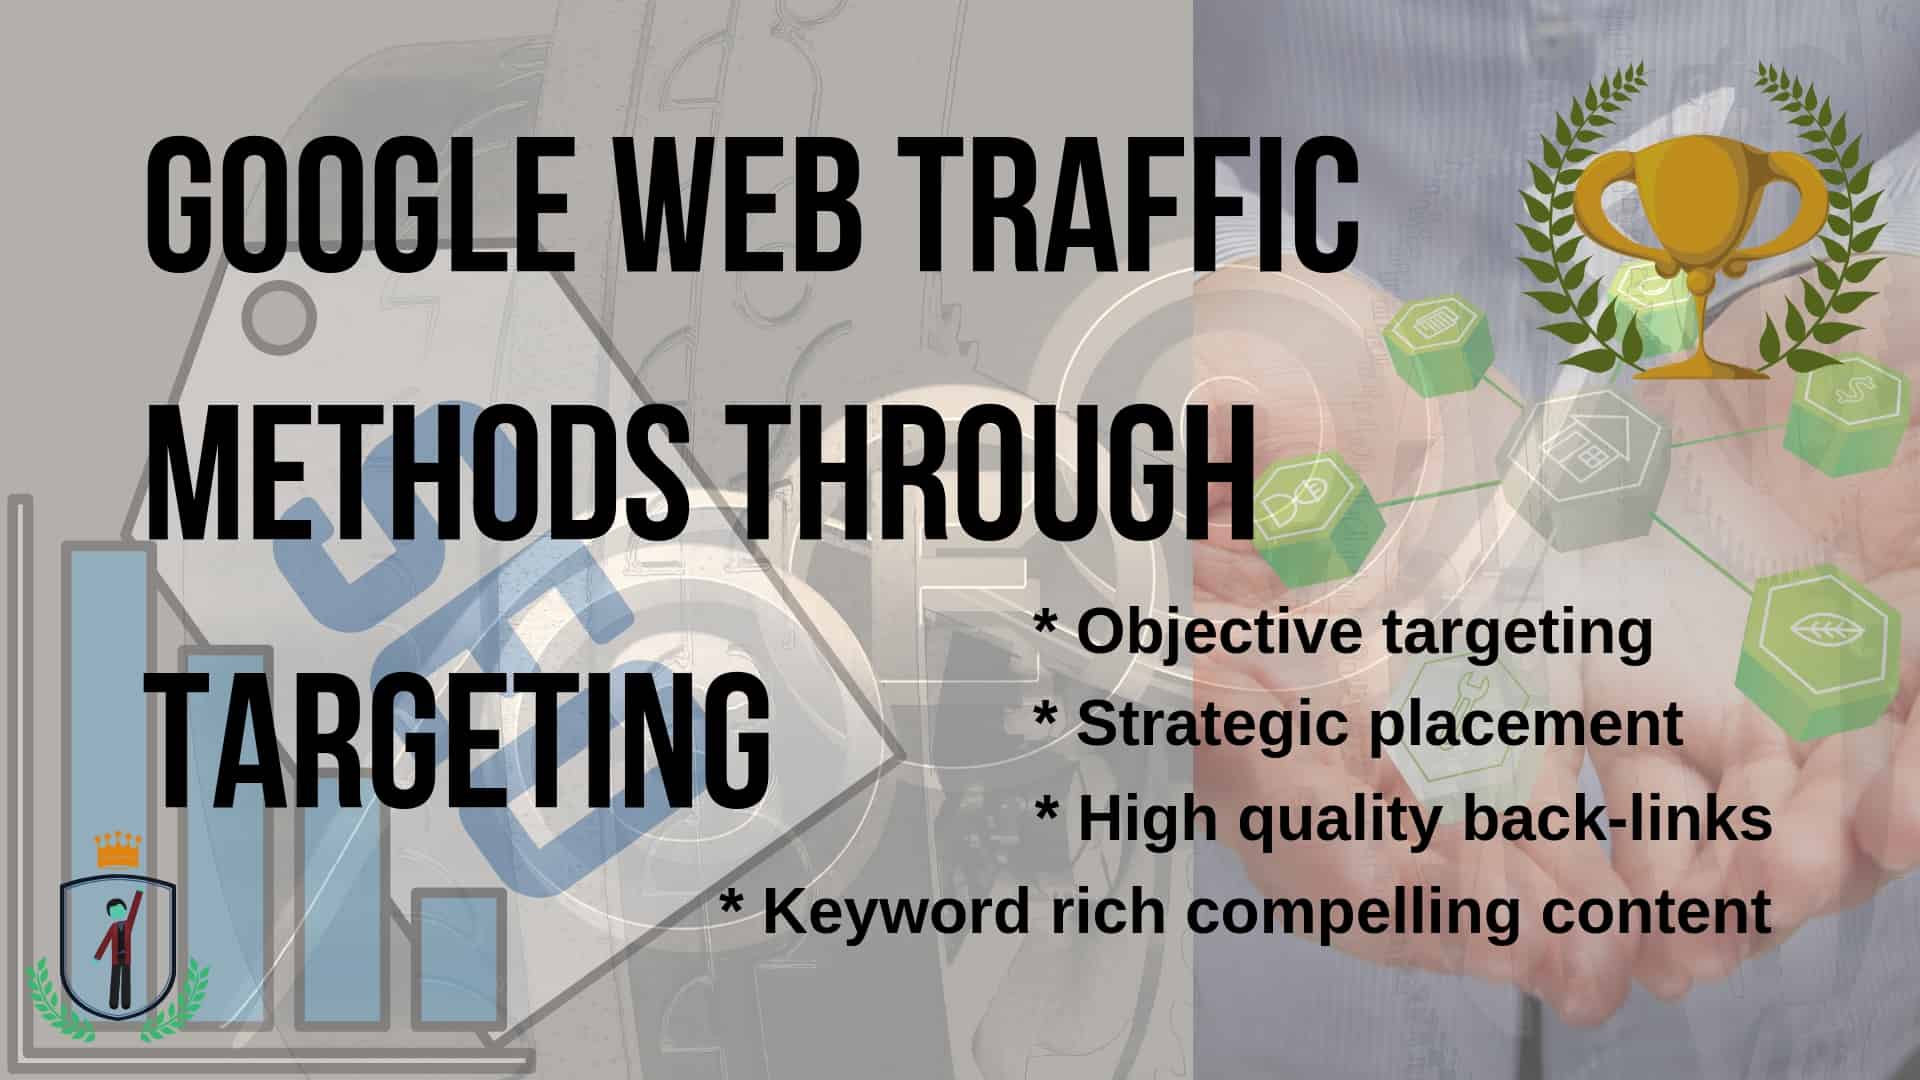 Google web traffic methods through targeting